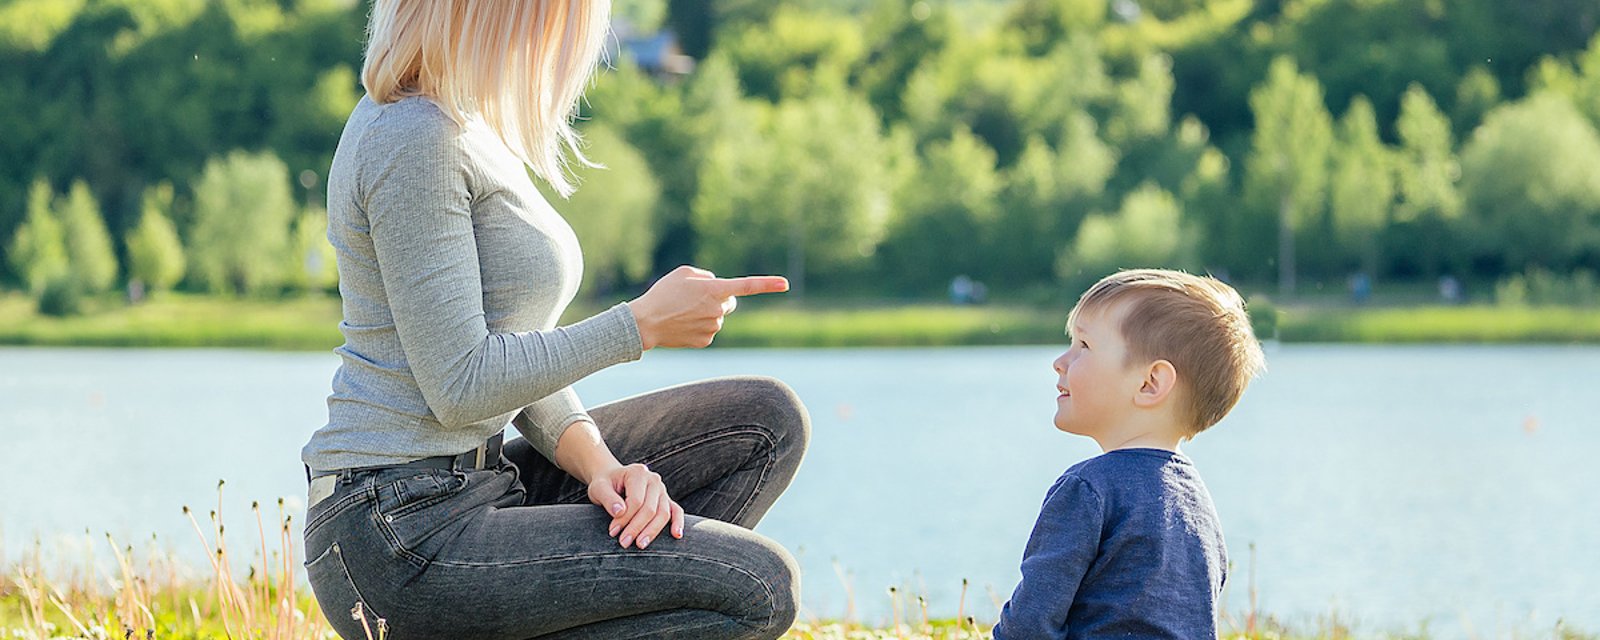 Comment réagir si une autre personne gronde votre enfant: 7 conseils